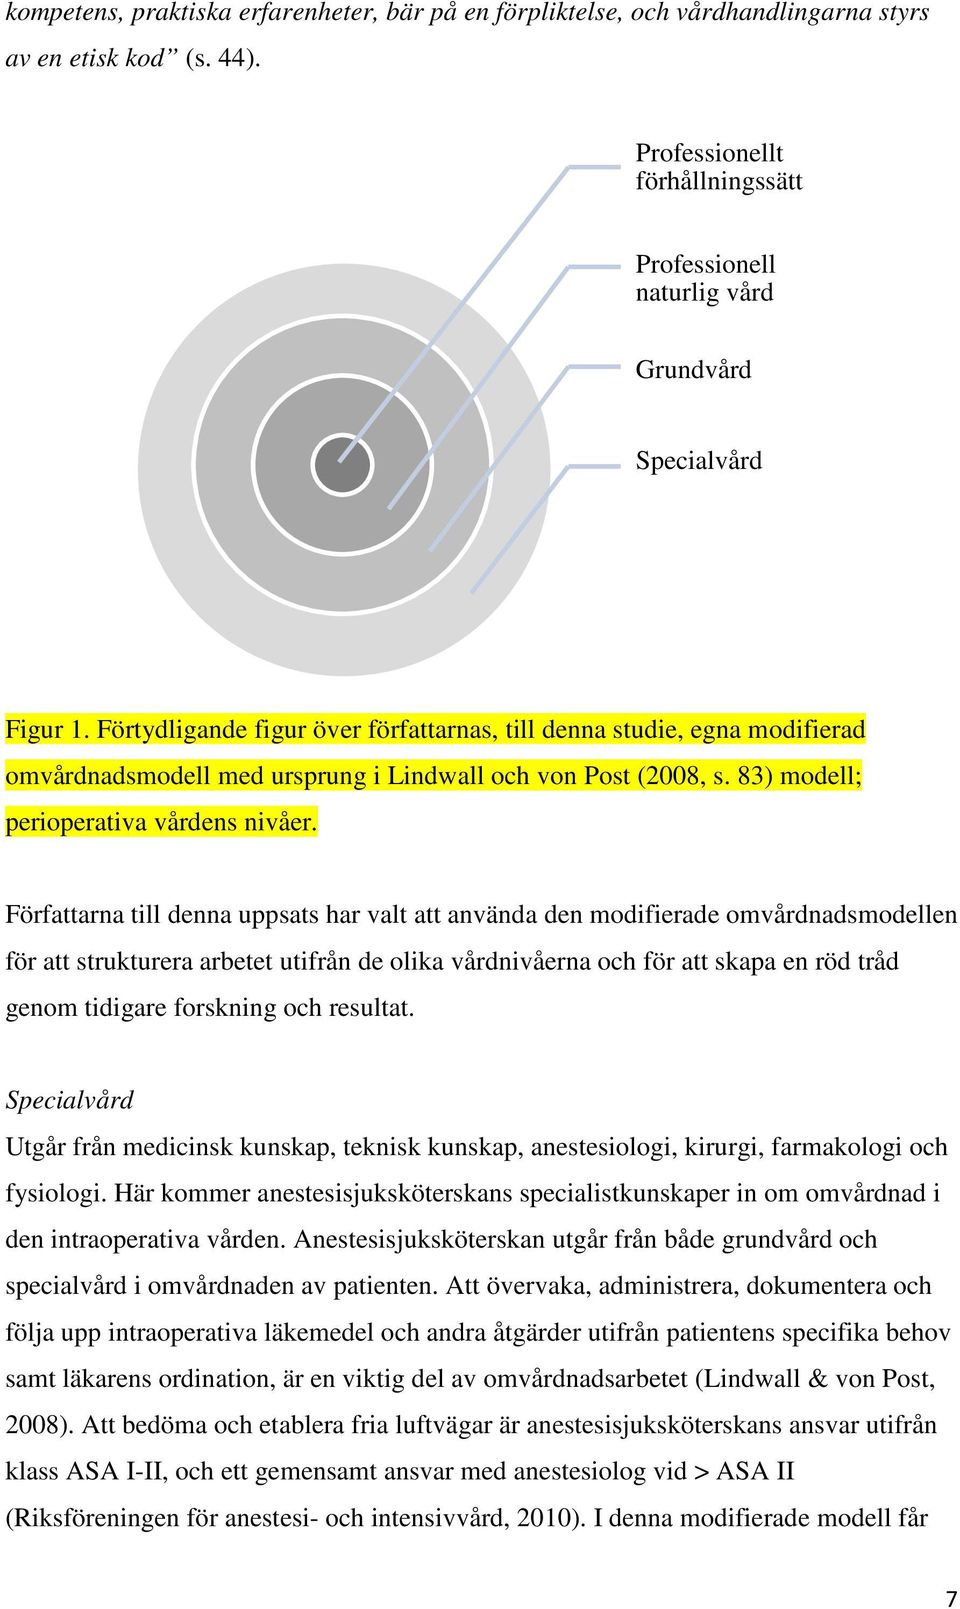 Förtydligande figur över författarnas, till denna studie, egna modifierad omvårdnadsmodell med ursprung i Lindwall och von Post (2008, s. 83) modell; perioperativa vårdens nivåer.